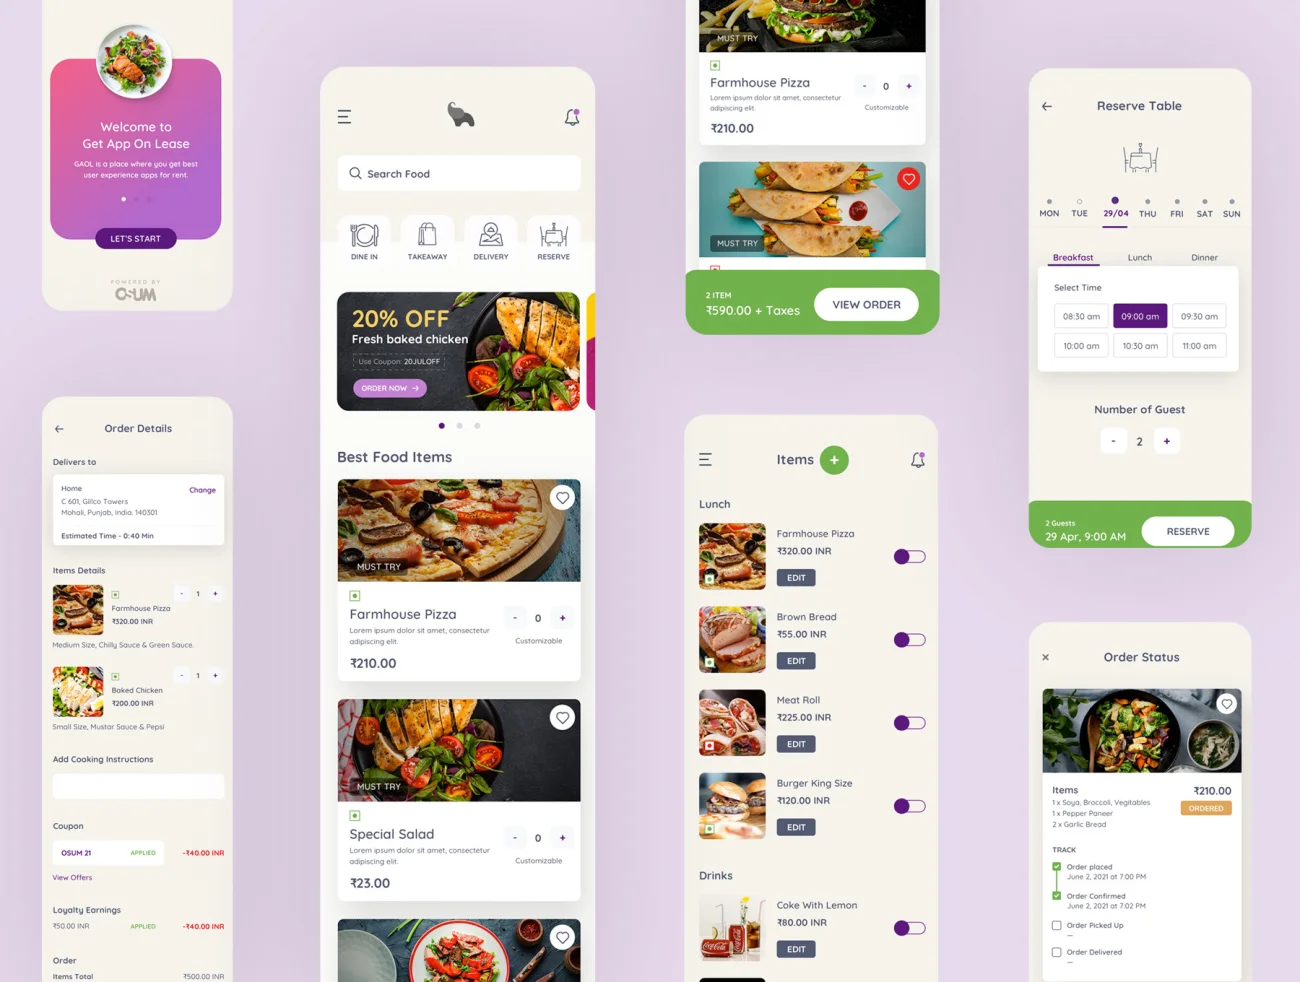 55屏食品外卖订购应用UI设计套件 Eatfresh - Food Ordering App-UI/UX、ui套件、主页、付款、卡片式、地图、应用、支付、注册、登录页、网购、详情、预订-到位啦UI